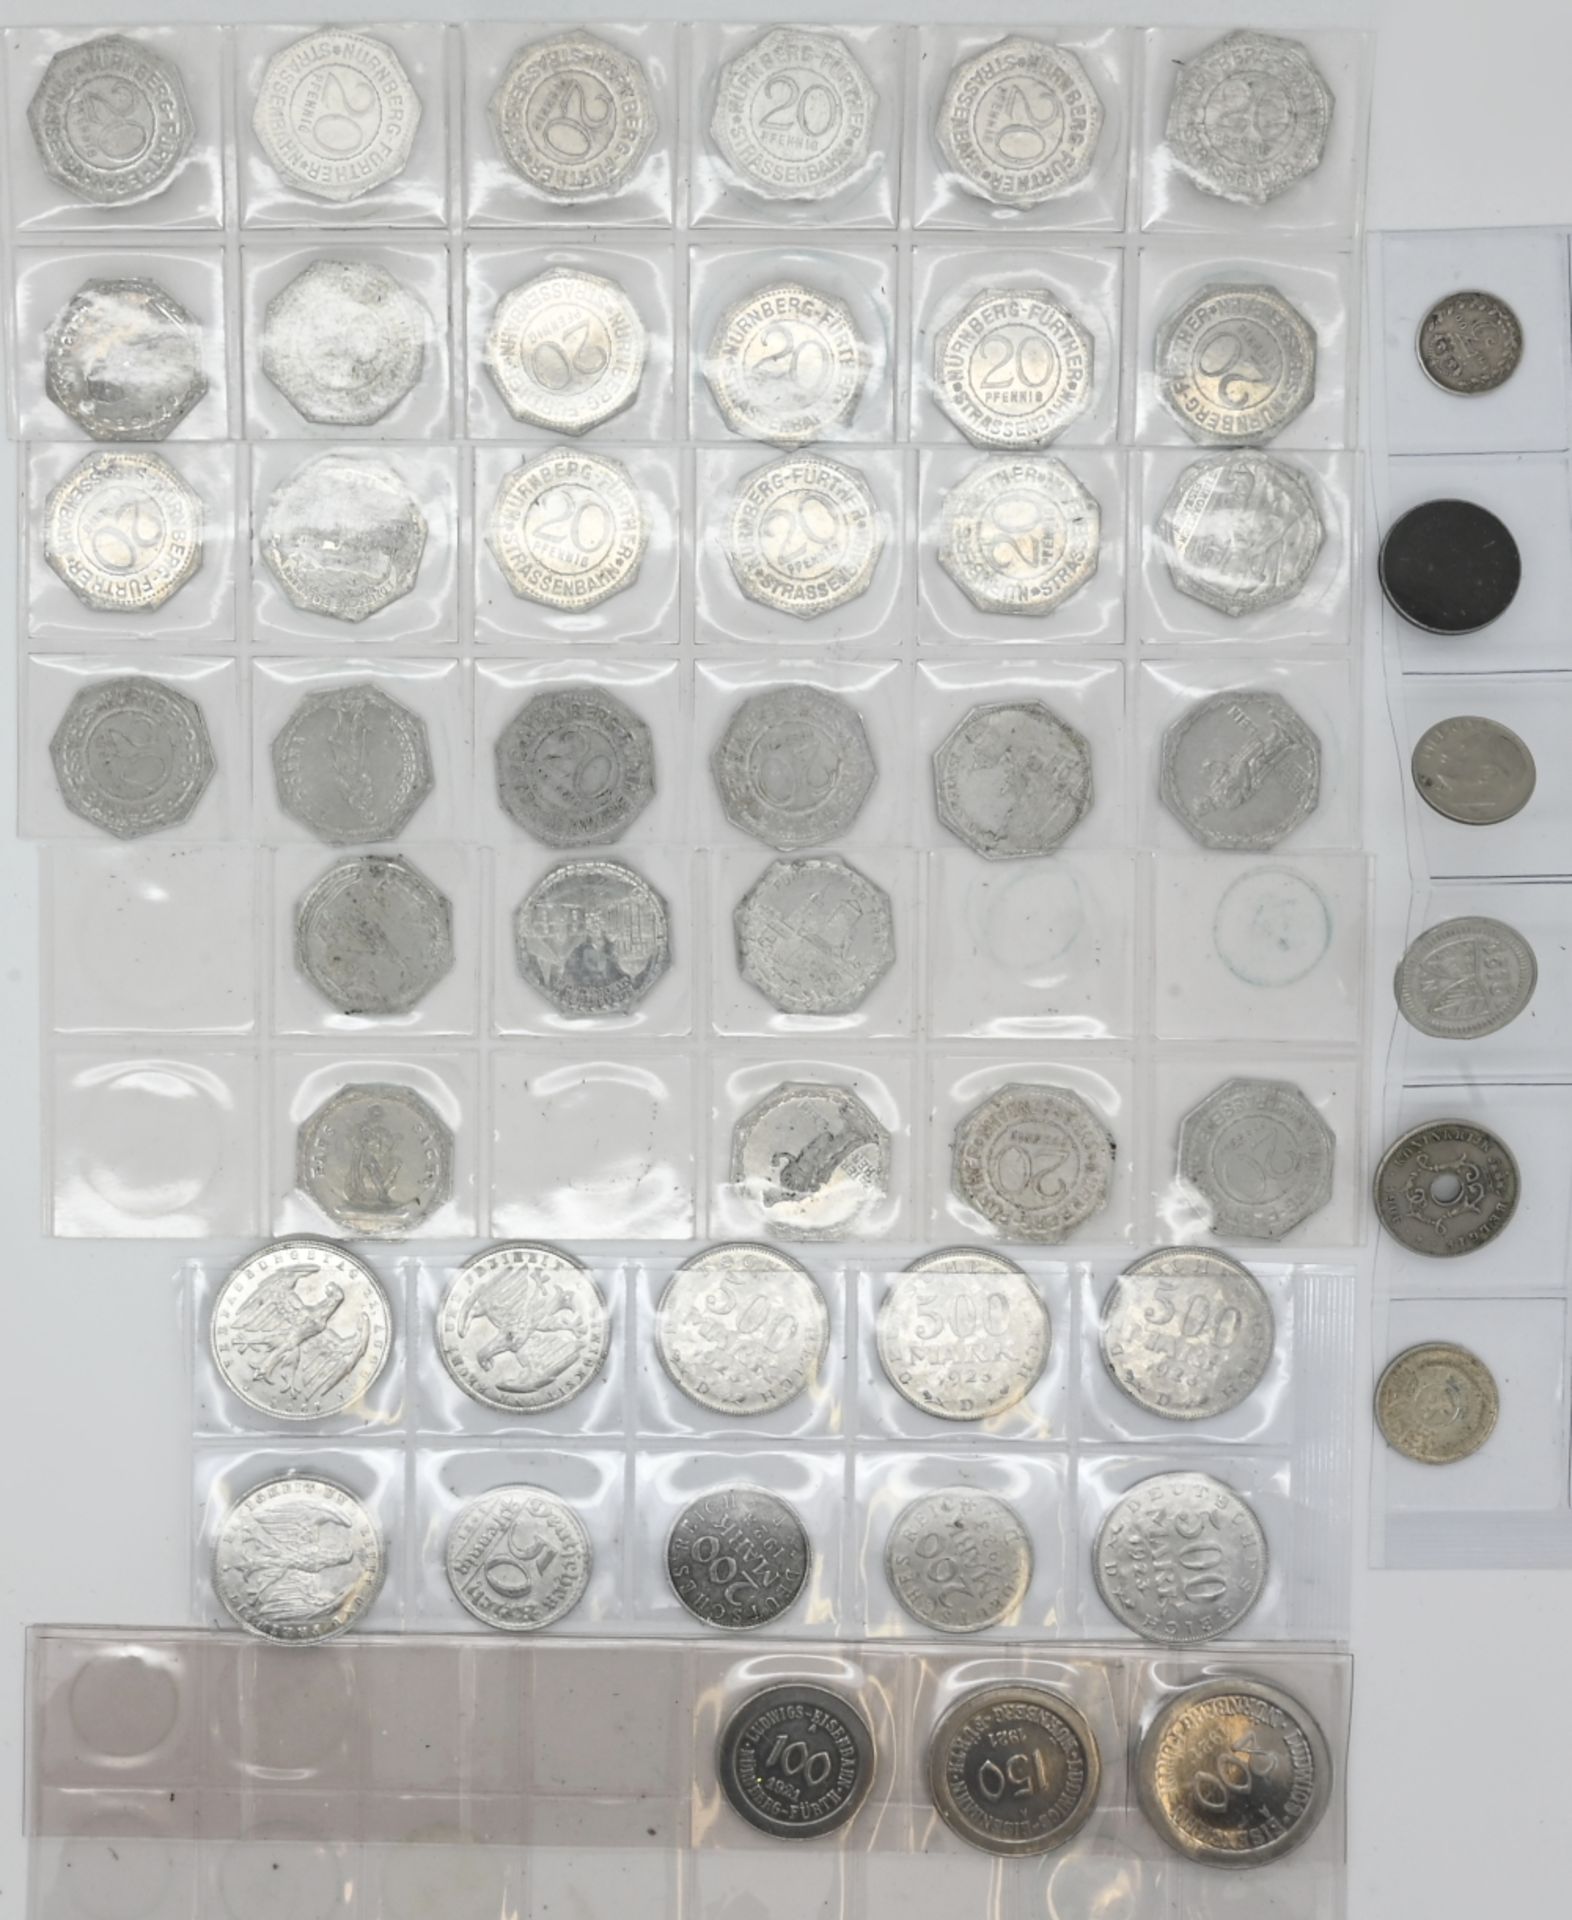 2 Münzen je GG, je Dt. Reich, je 20 Mark, datiert 1877 und 1908, wohl aus der Zeit, Silber/Metall u. - Bild 2 aus 2